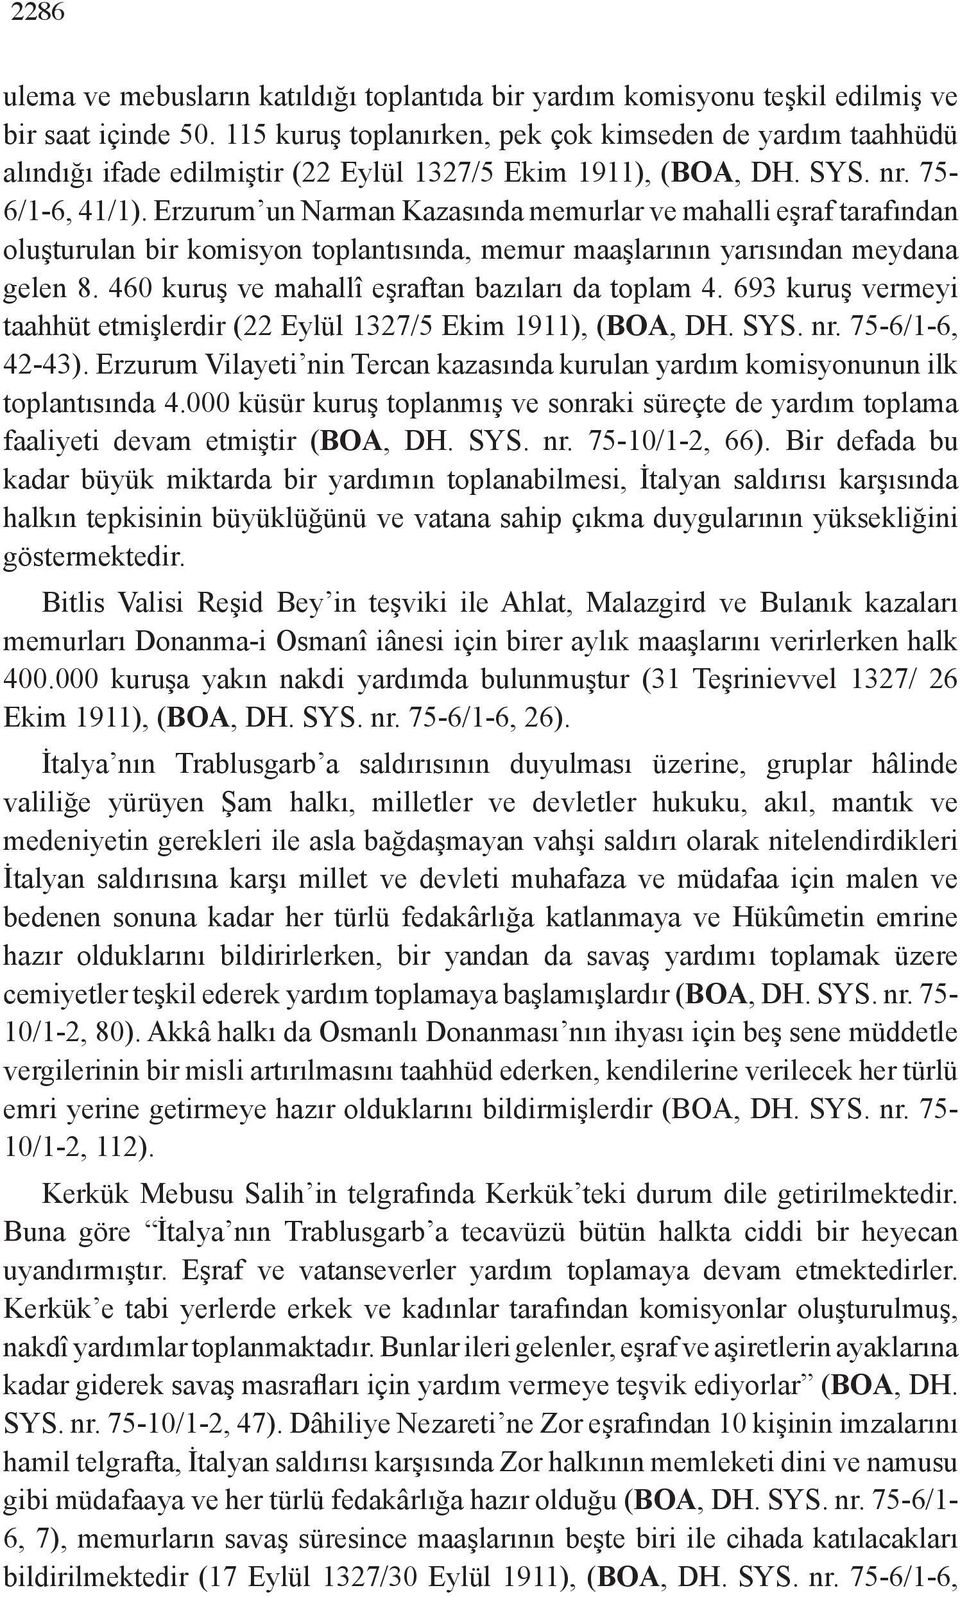 Erzurum un Narman Kazasında memurlar ve mahalli eşraf tarafından oluşturulan bir komisyon toplantısında, memur maaşlarının yarısından meydana gelen 8.